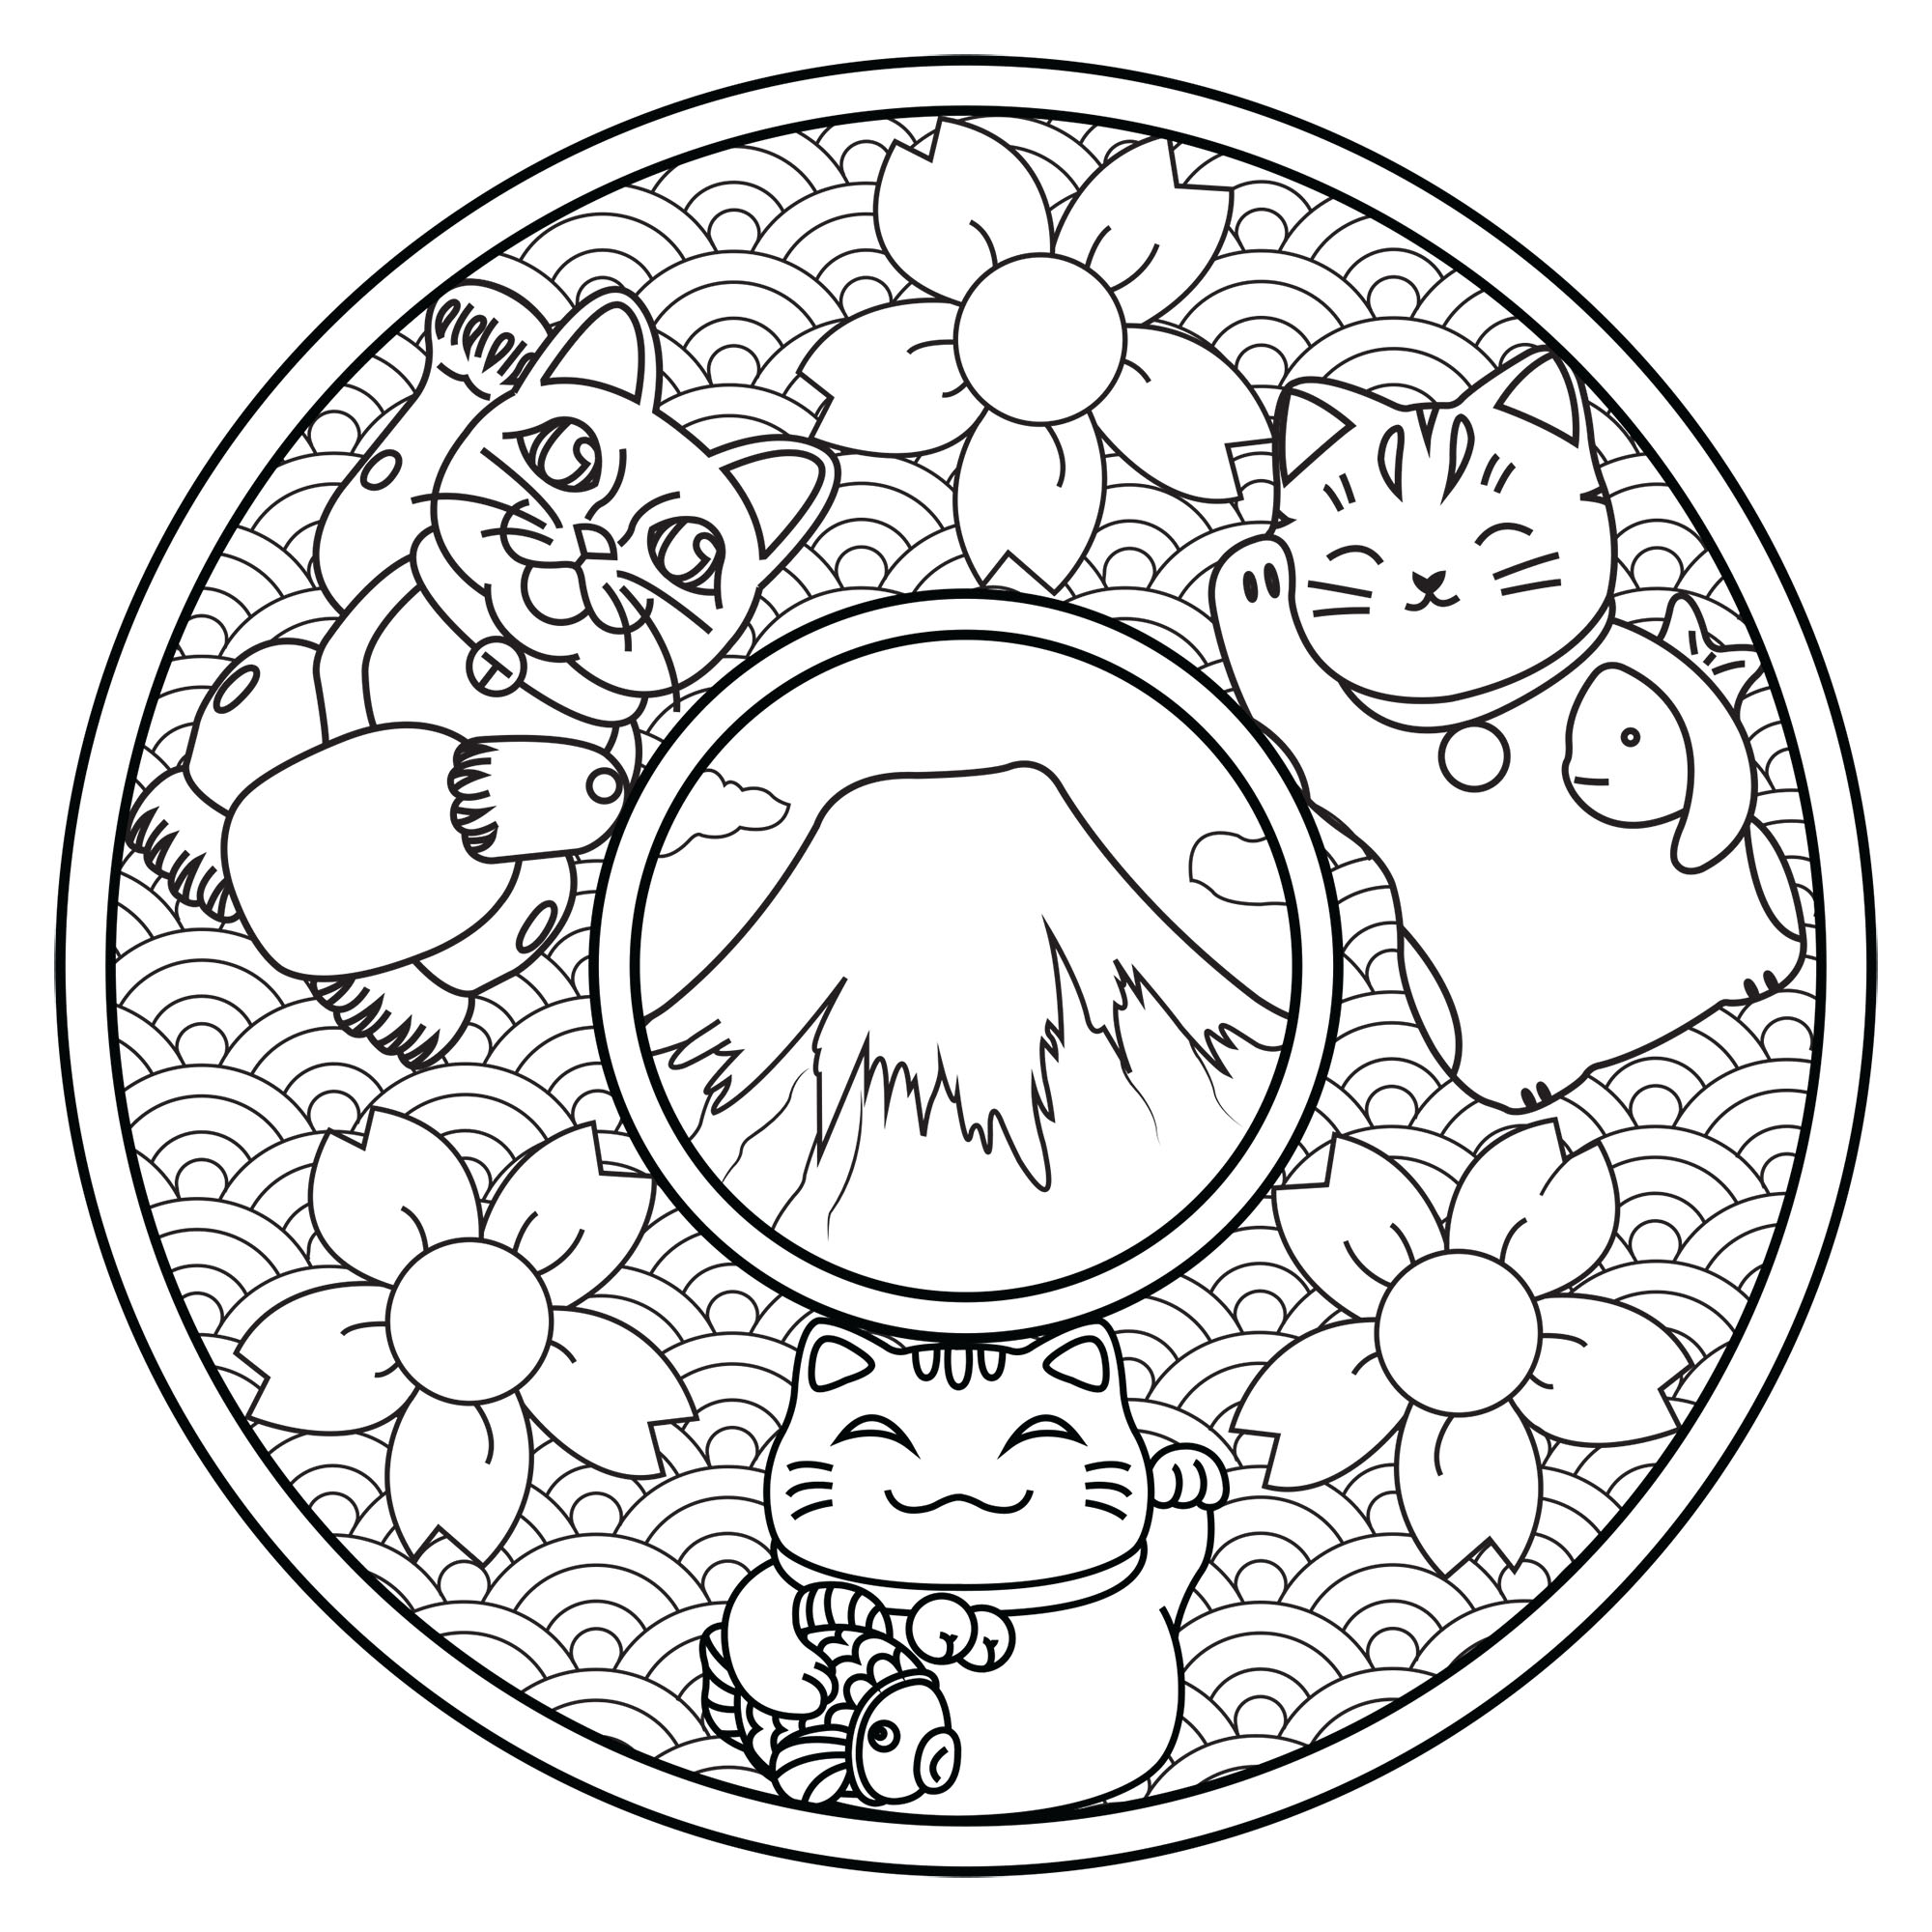 Colorate questi tre simpatici gatti su questo mandala ispirato al Giappone: Monte Fuji, fiori di ciliegio, onde...